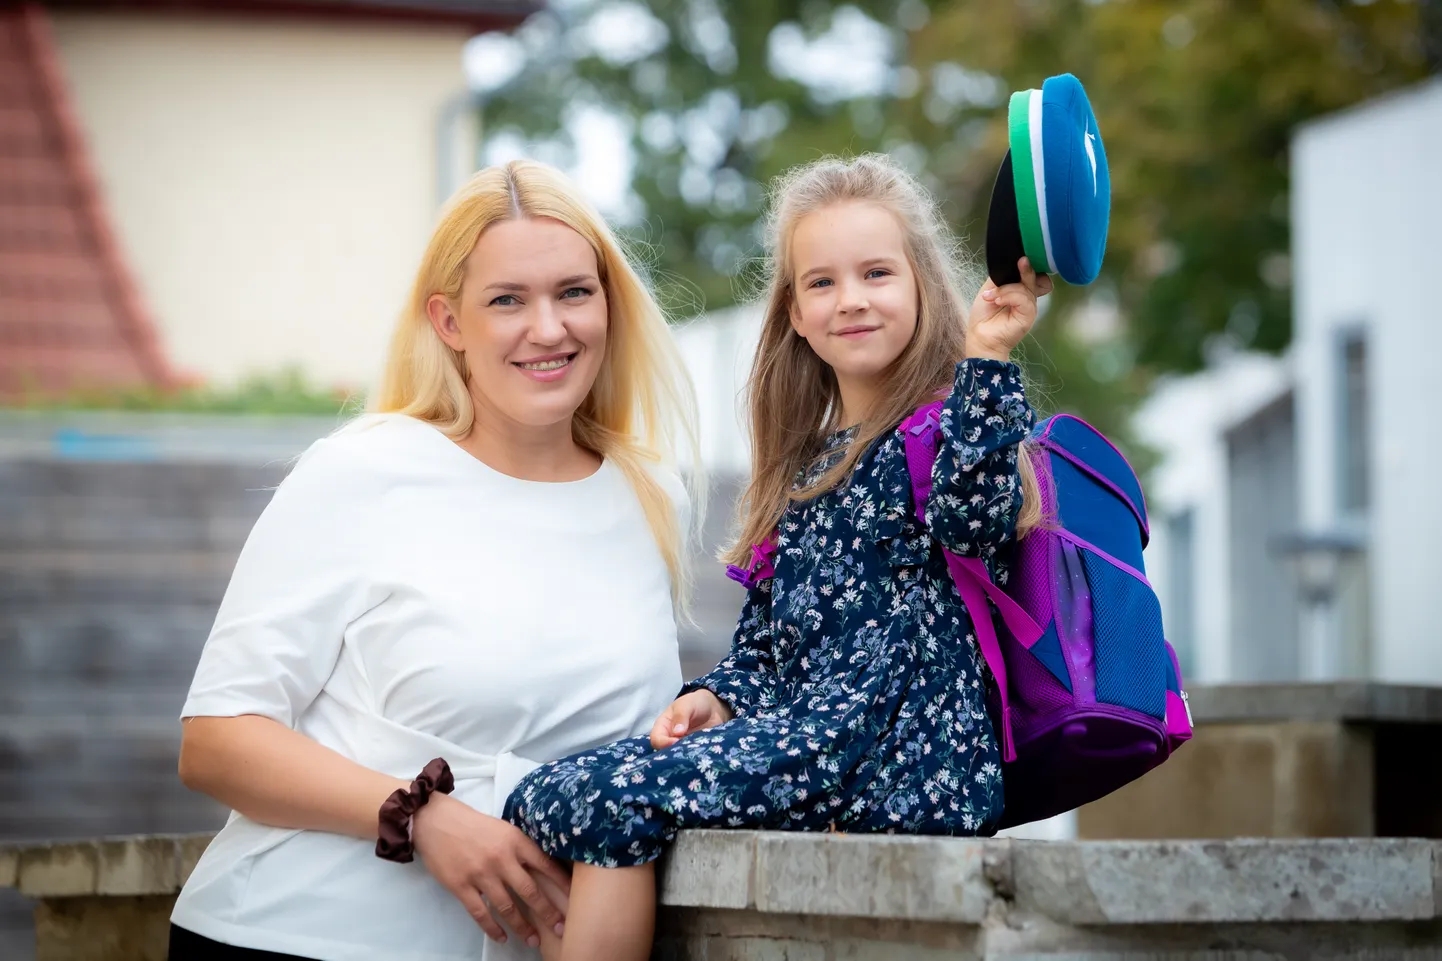 TERVISEKONTROLL HINDELE VIIS! Augusti keskpaigaks on ema Liana Kipper oma peagi 1. klassi mineva tütre Adeele Pisukoviga käinud tervisekontrollis nii hamba- kui ka perearsti juures.